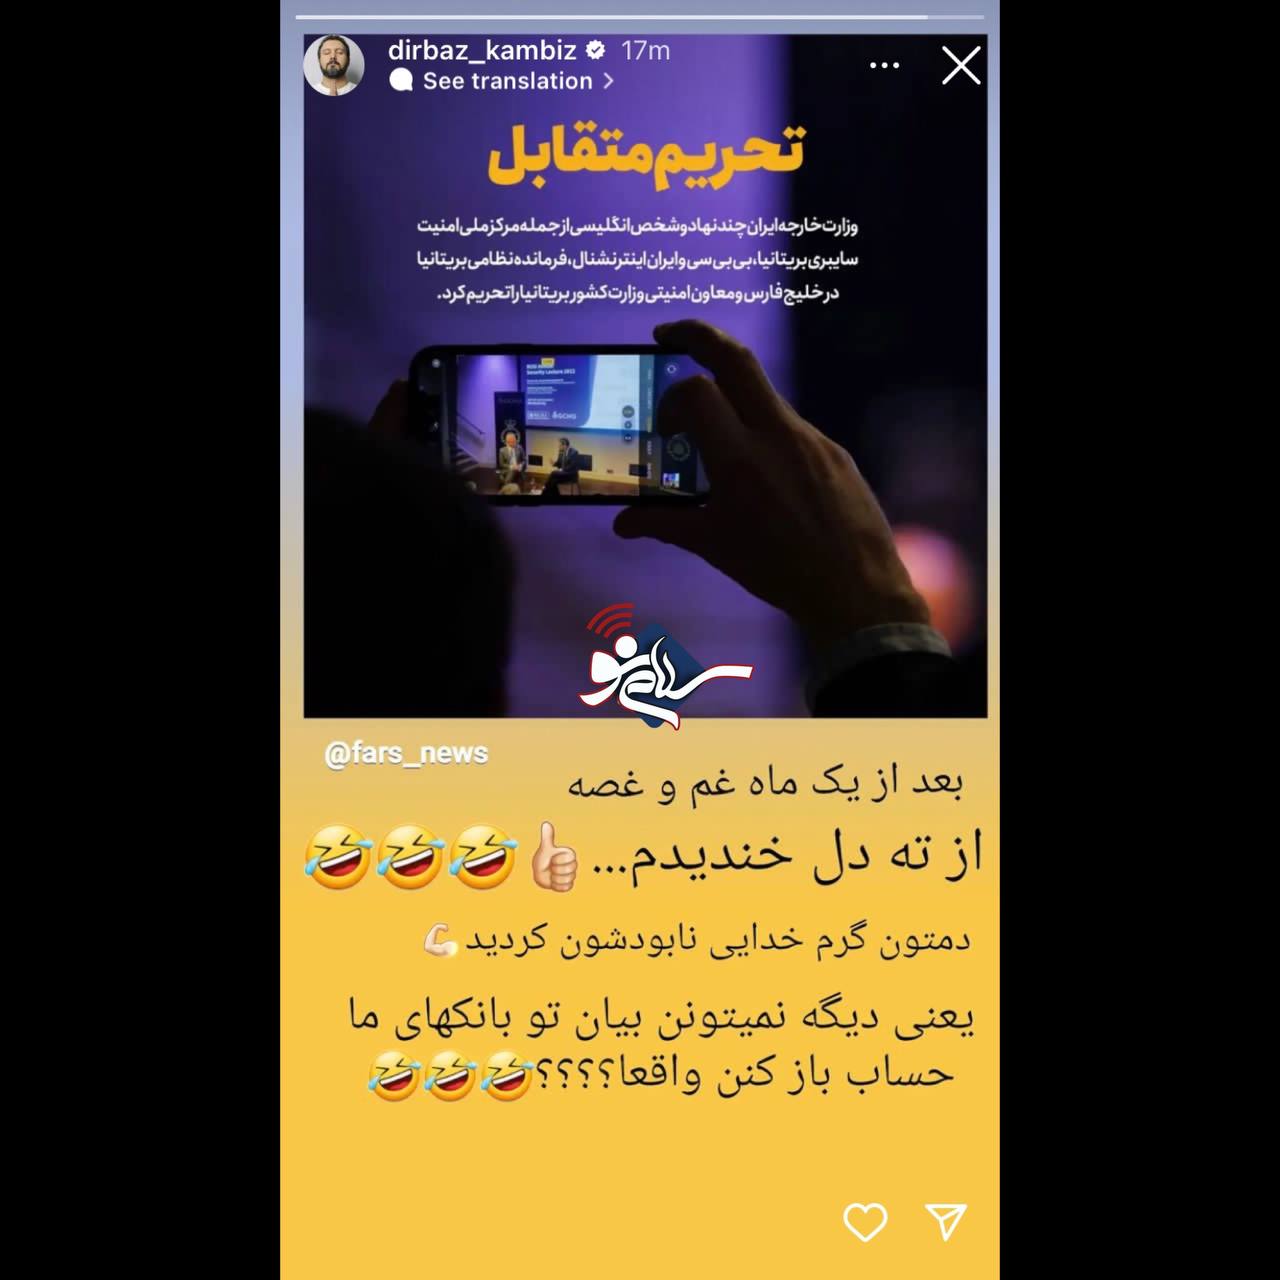 واکنش کامبیز دیرباز به تحریم مقامات خارجی توسط ایران + عکس